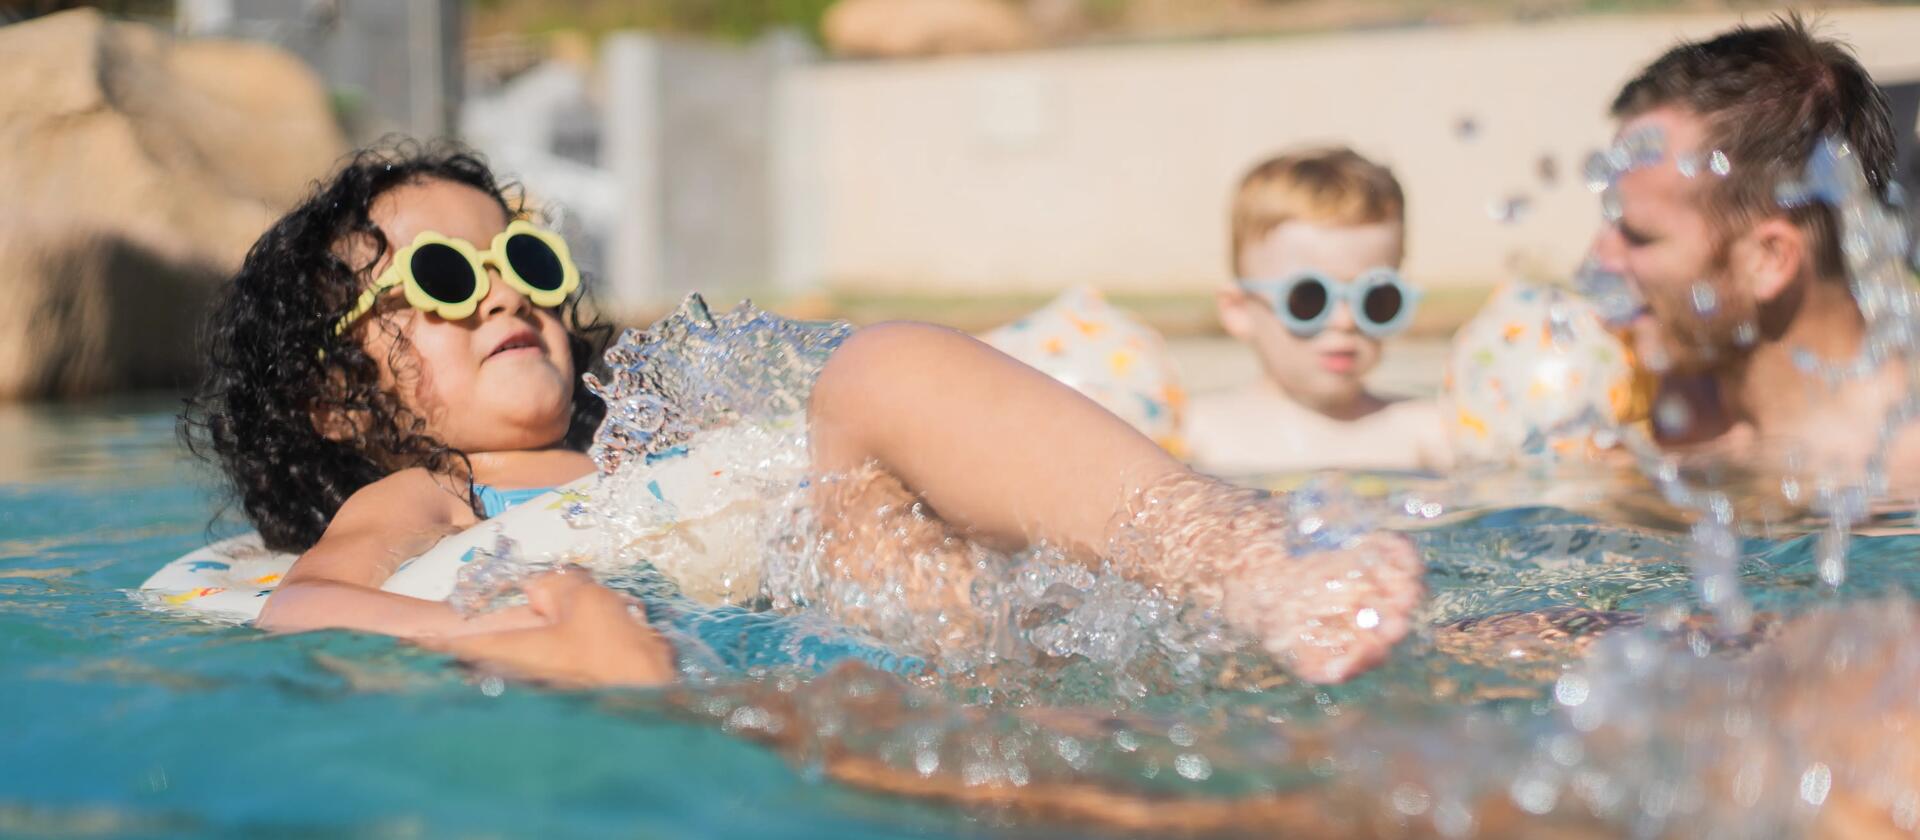 dziewczynka w okularach słonecznych pływająca w basenie 